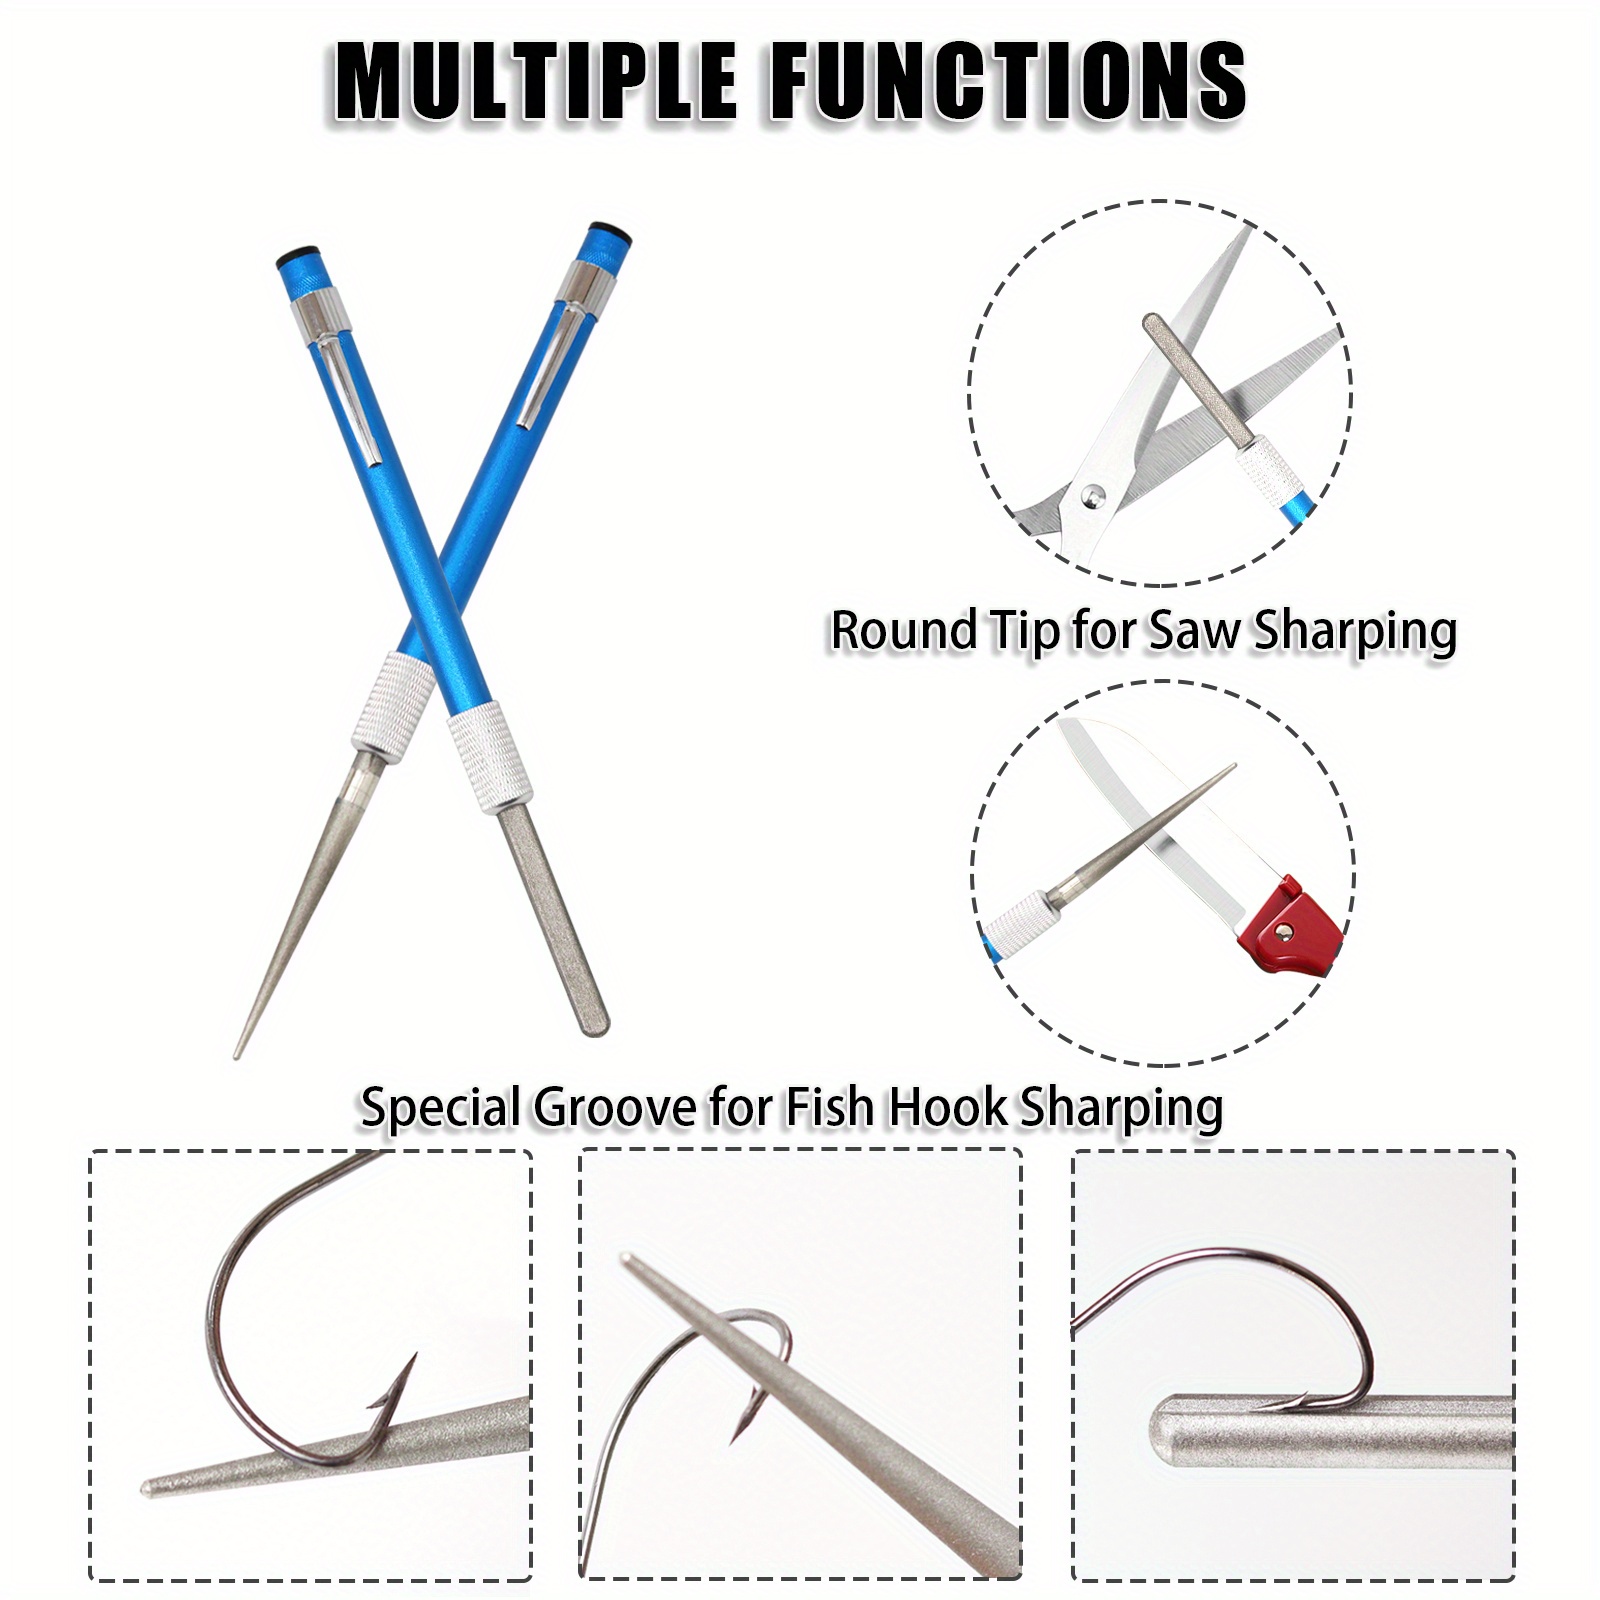 Fish Rod Repair Kit: Repair Your Fishing Pole Eyelet 13 Size - Temu